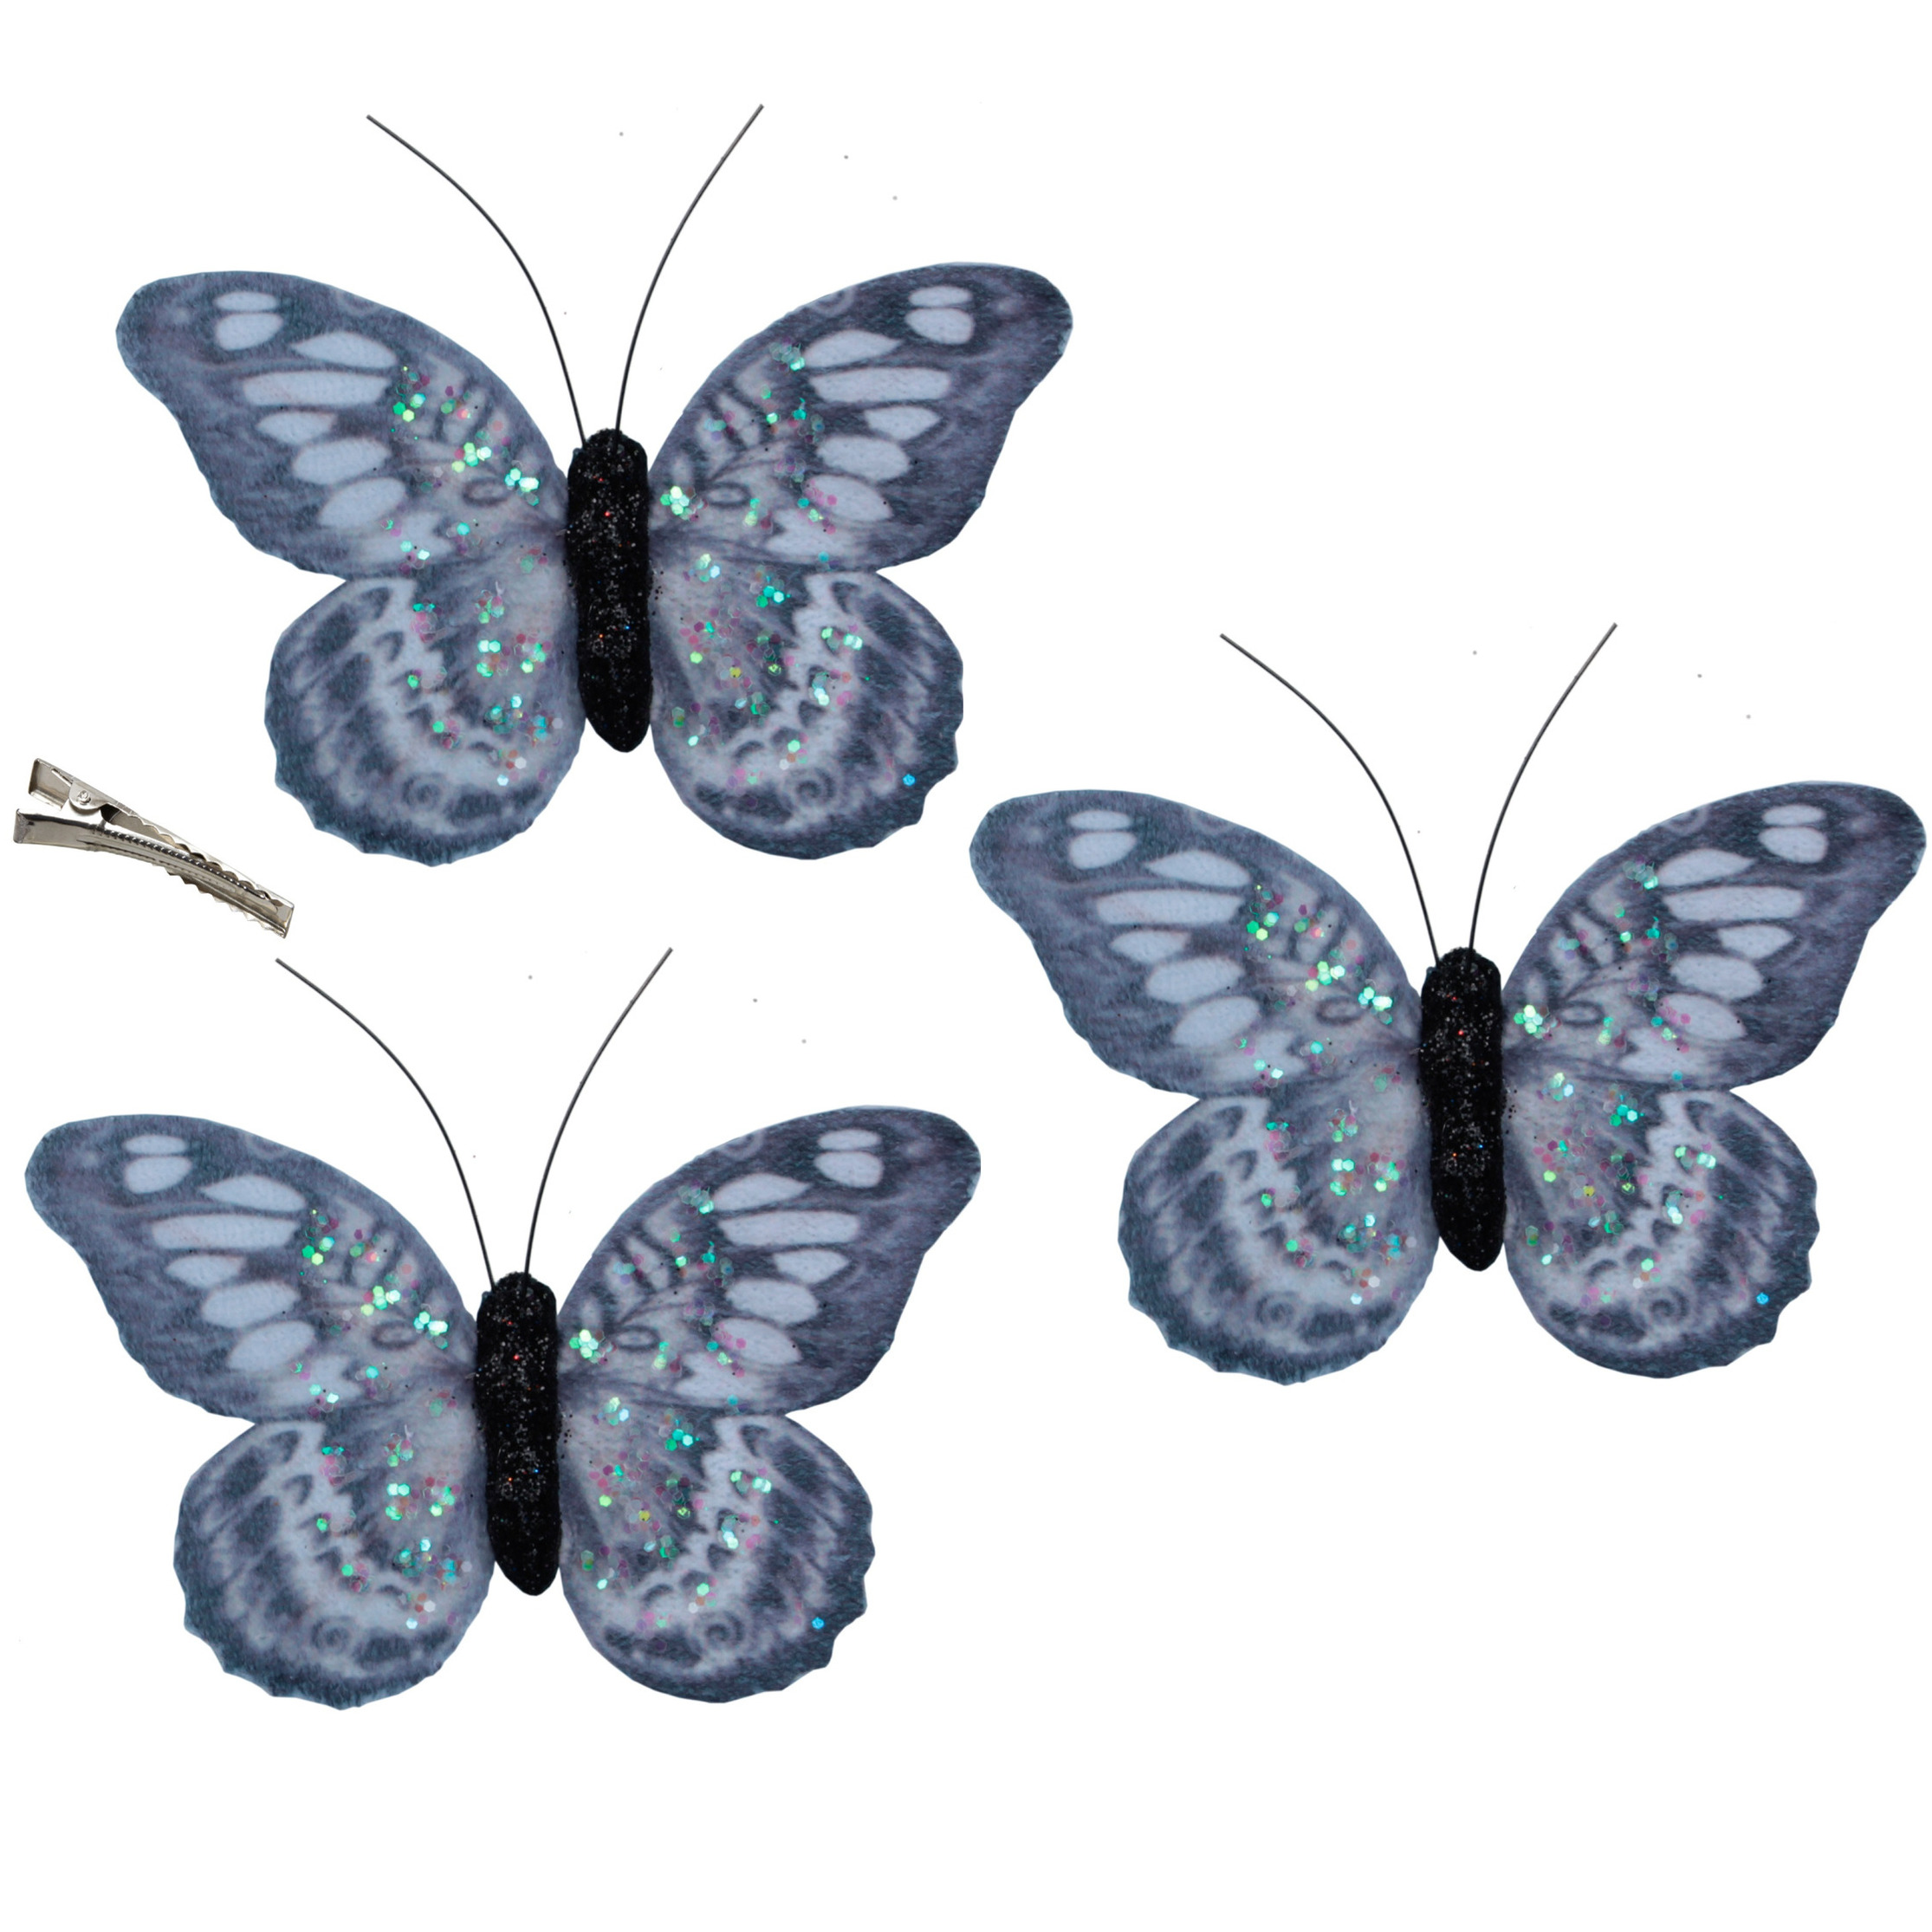 12x stuks decoratie vlinders op clip grijs/blauw 8,5 x 6 cm